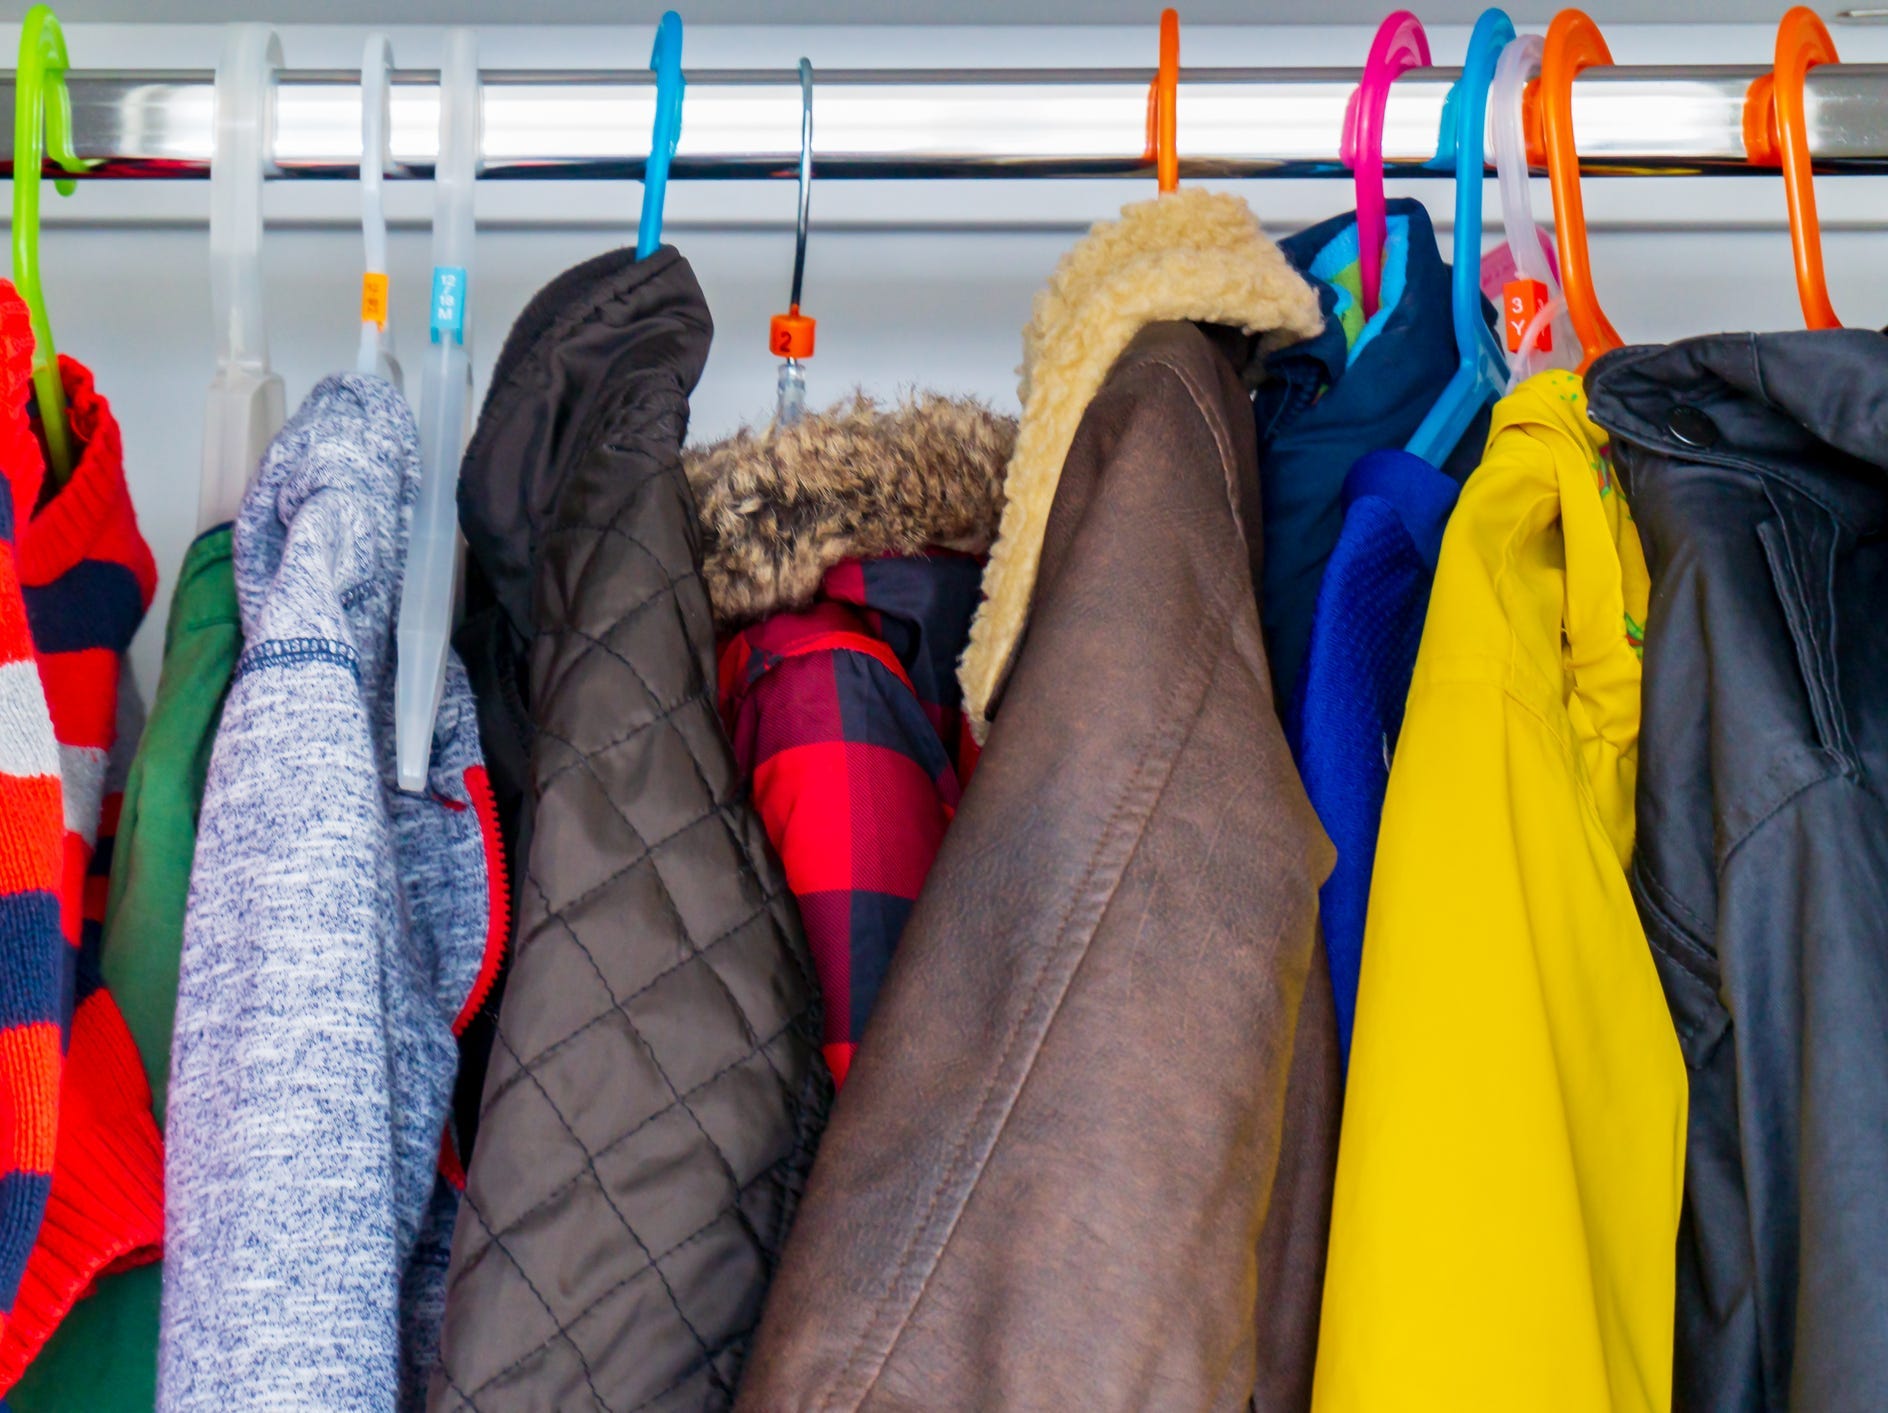 Coats hanging in a closet